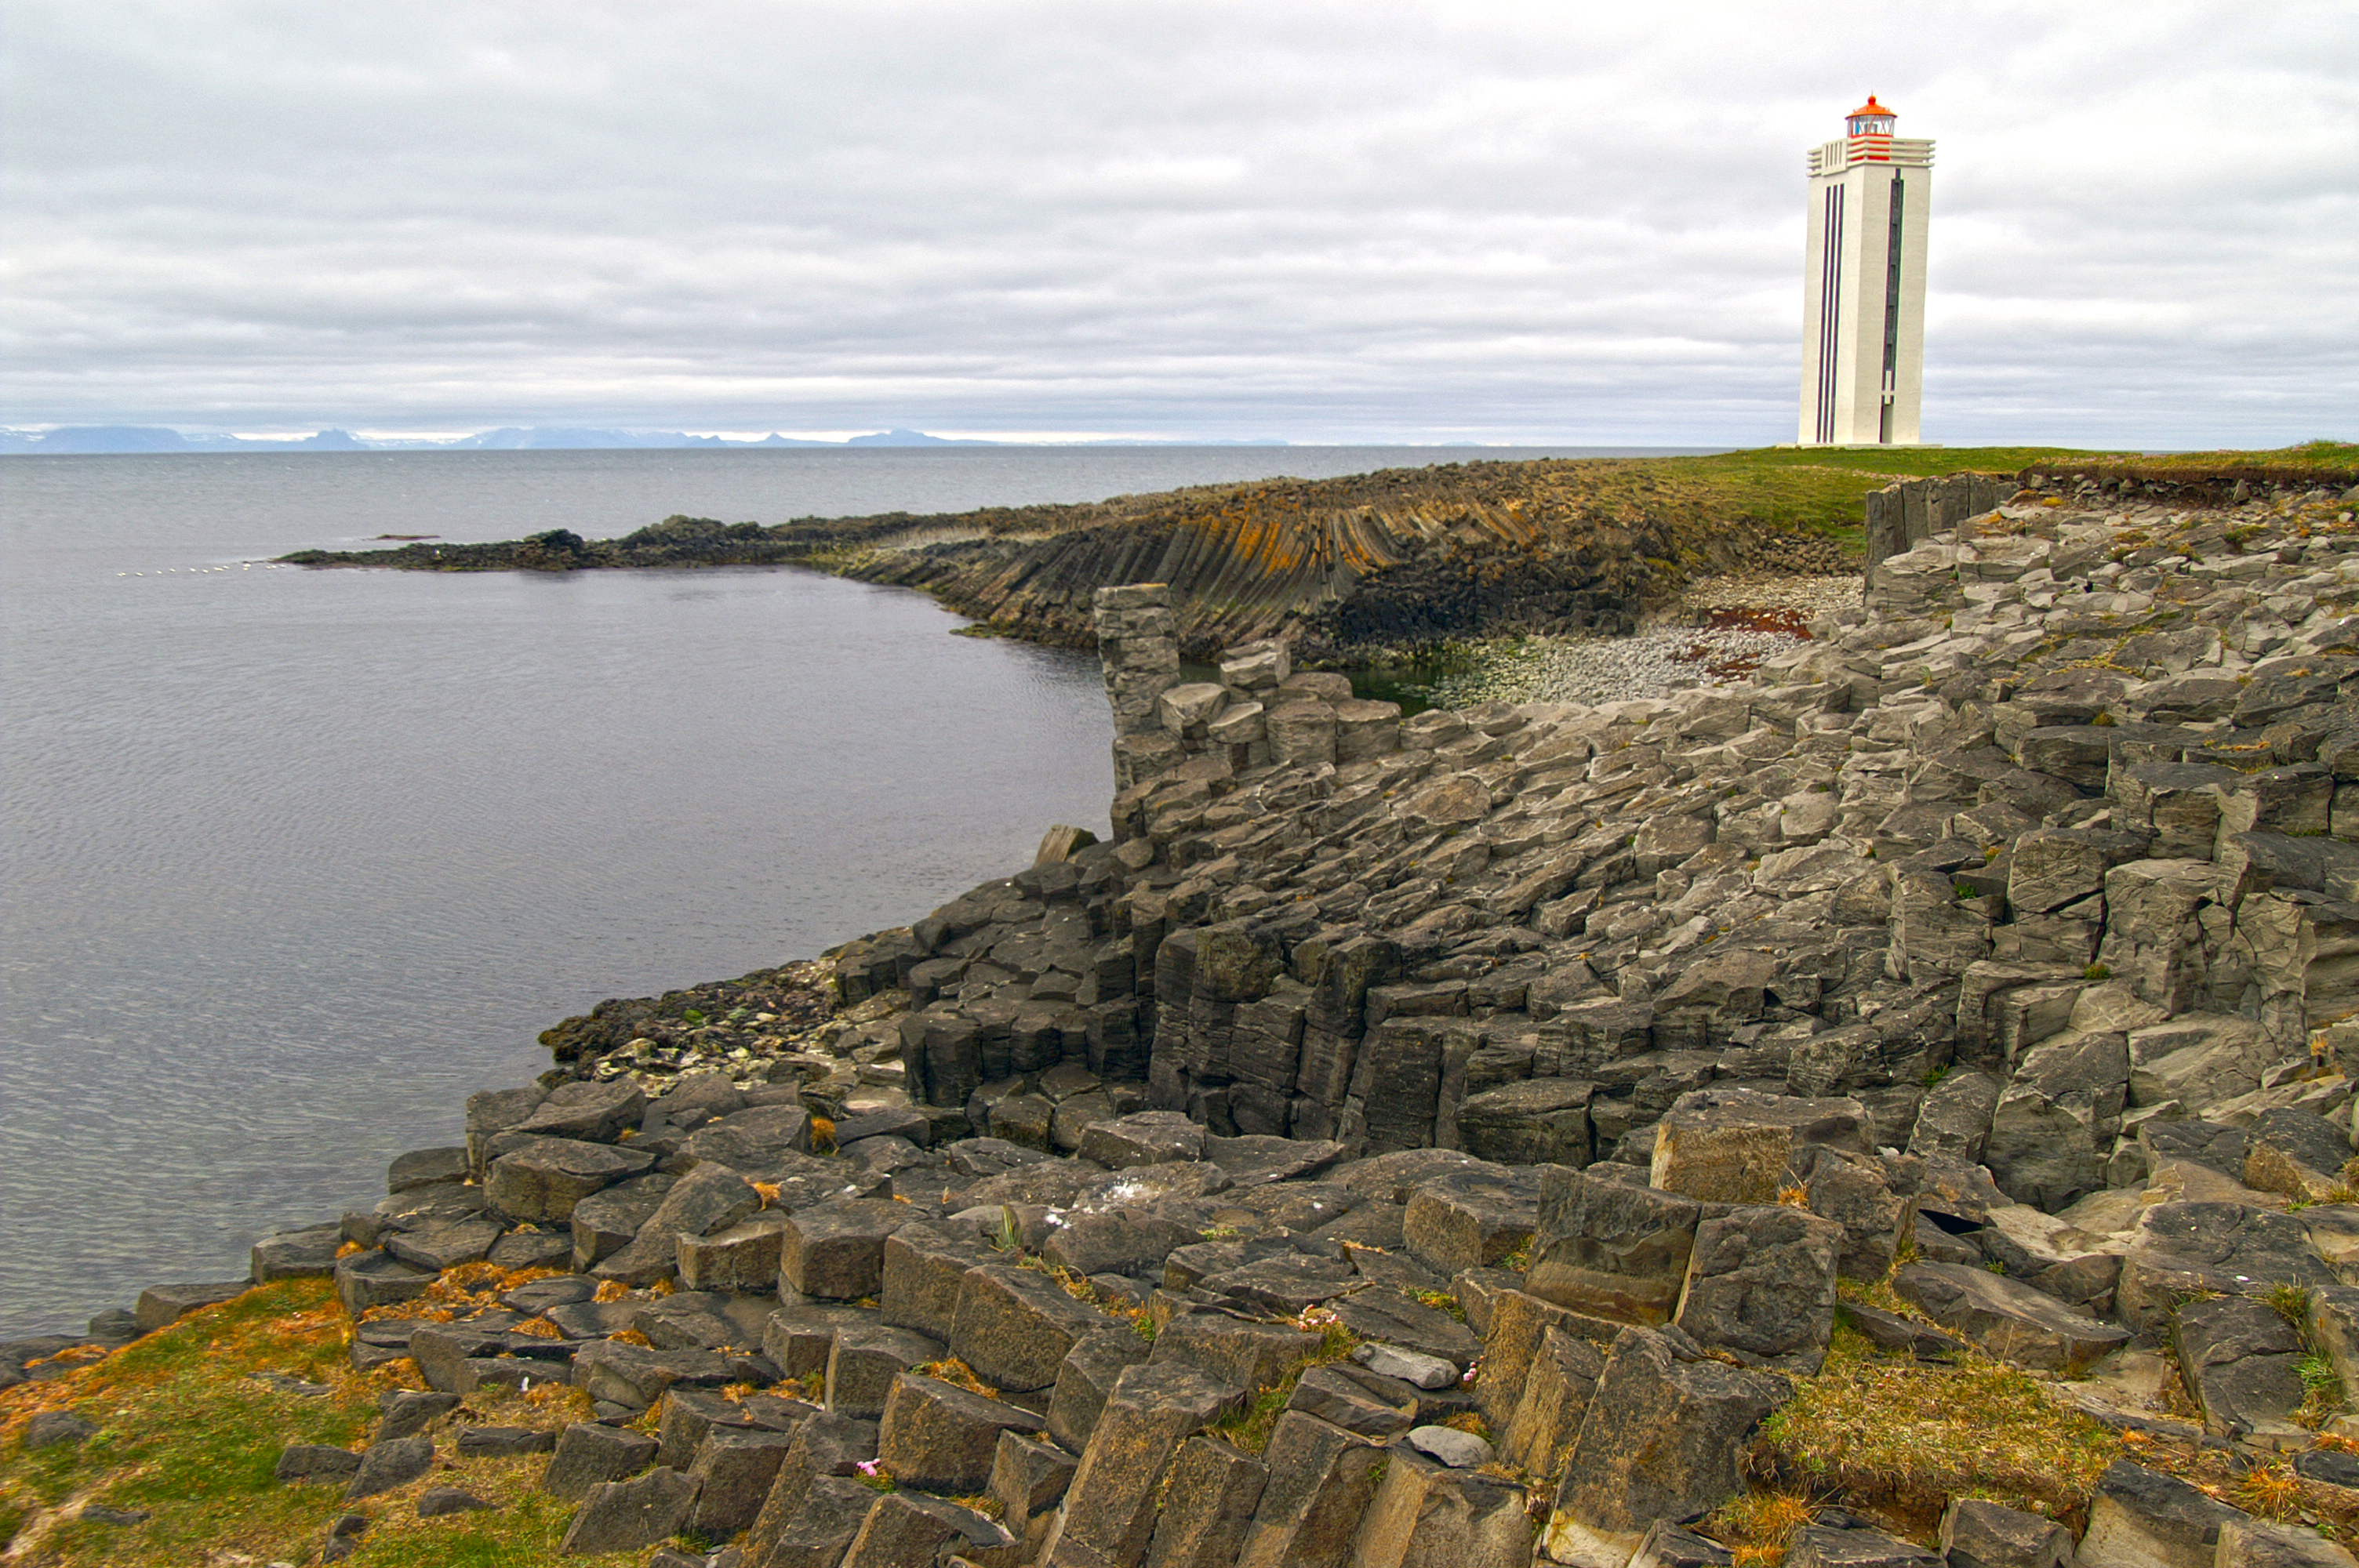 Kálfshamarsvík Lighthouse - Summer Destination